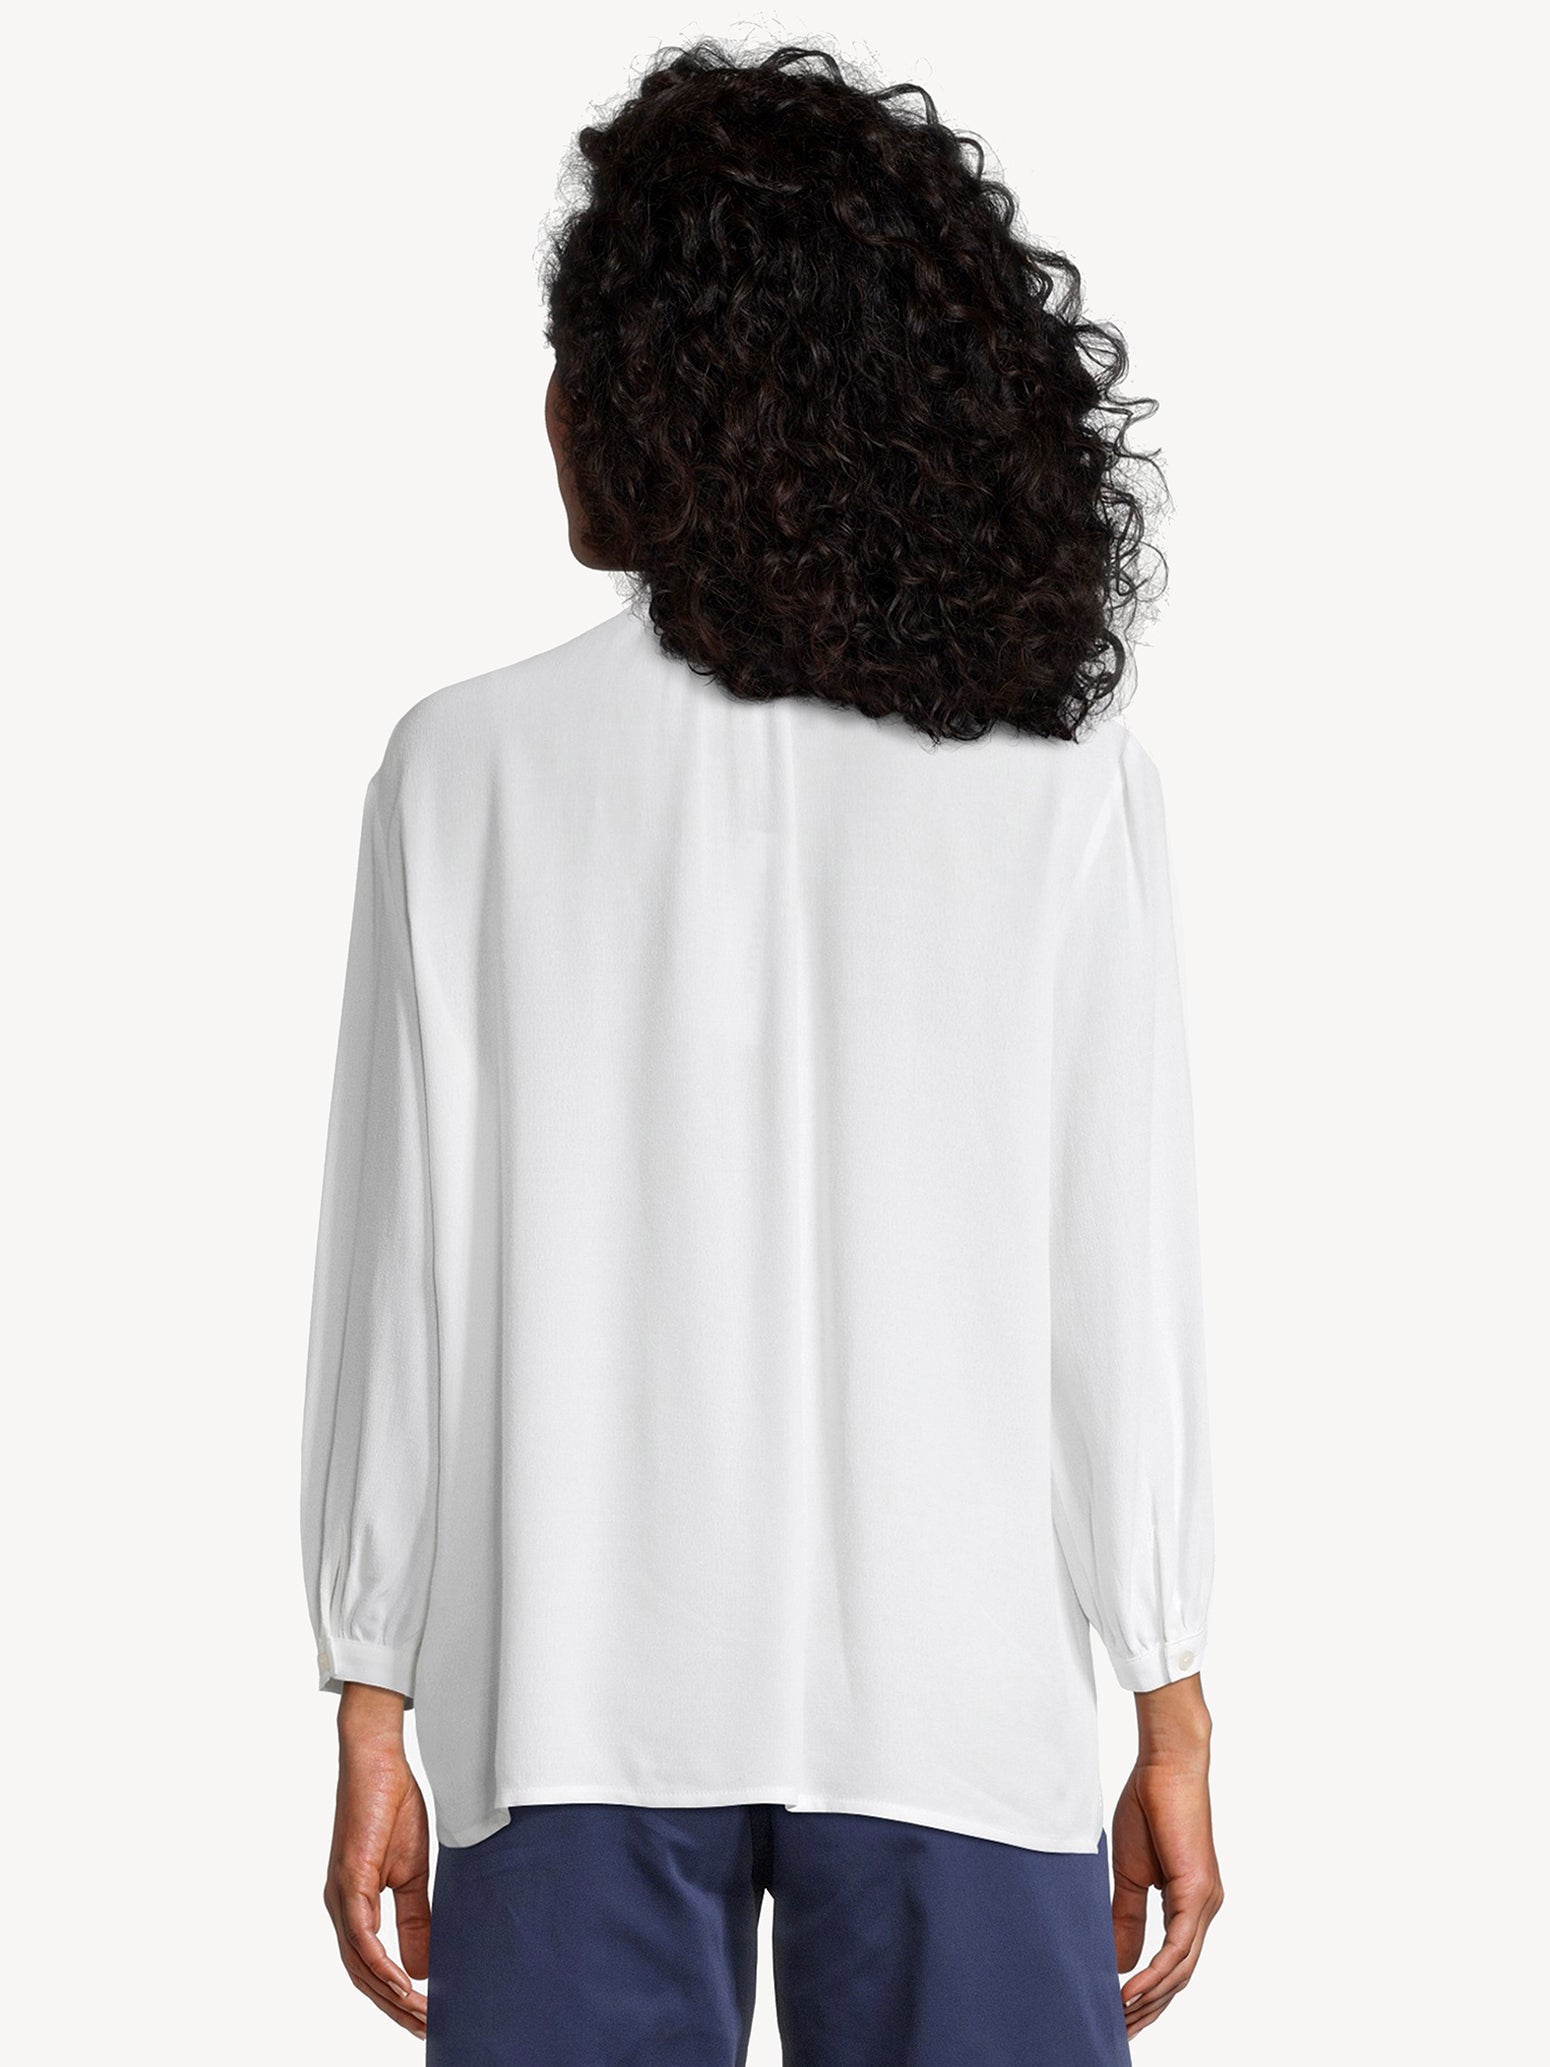 Annecy Standup Collar Blouse in Bright White Hemden Tamaris   